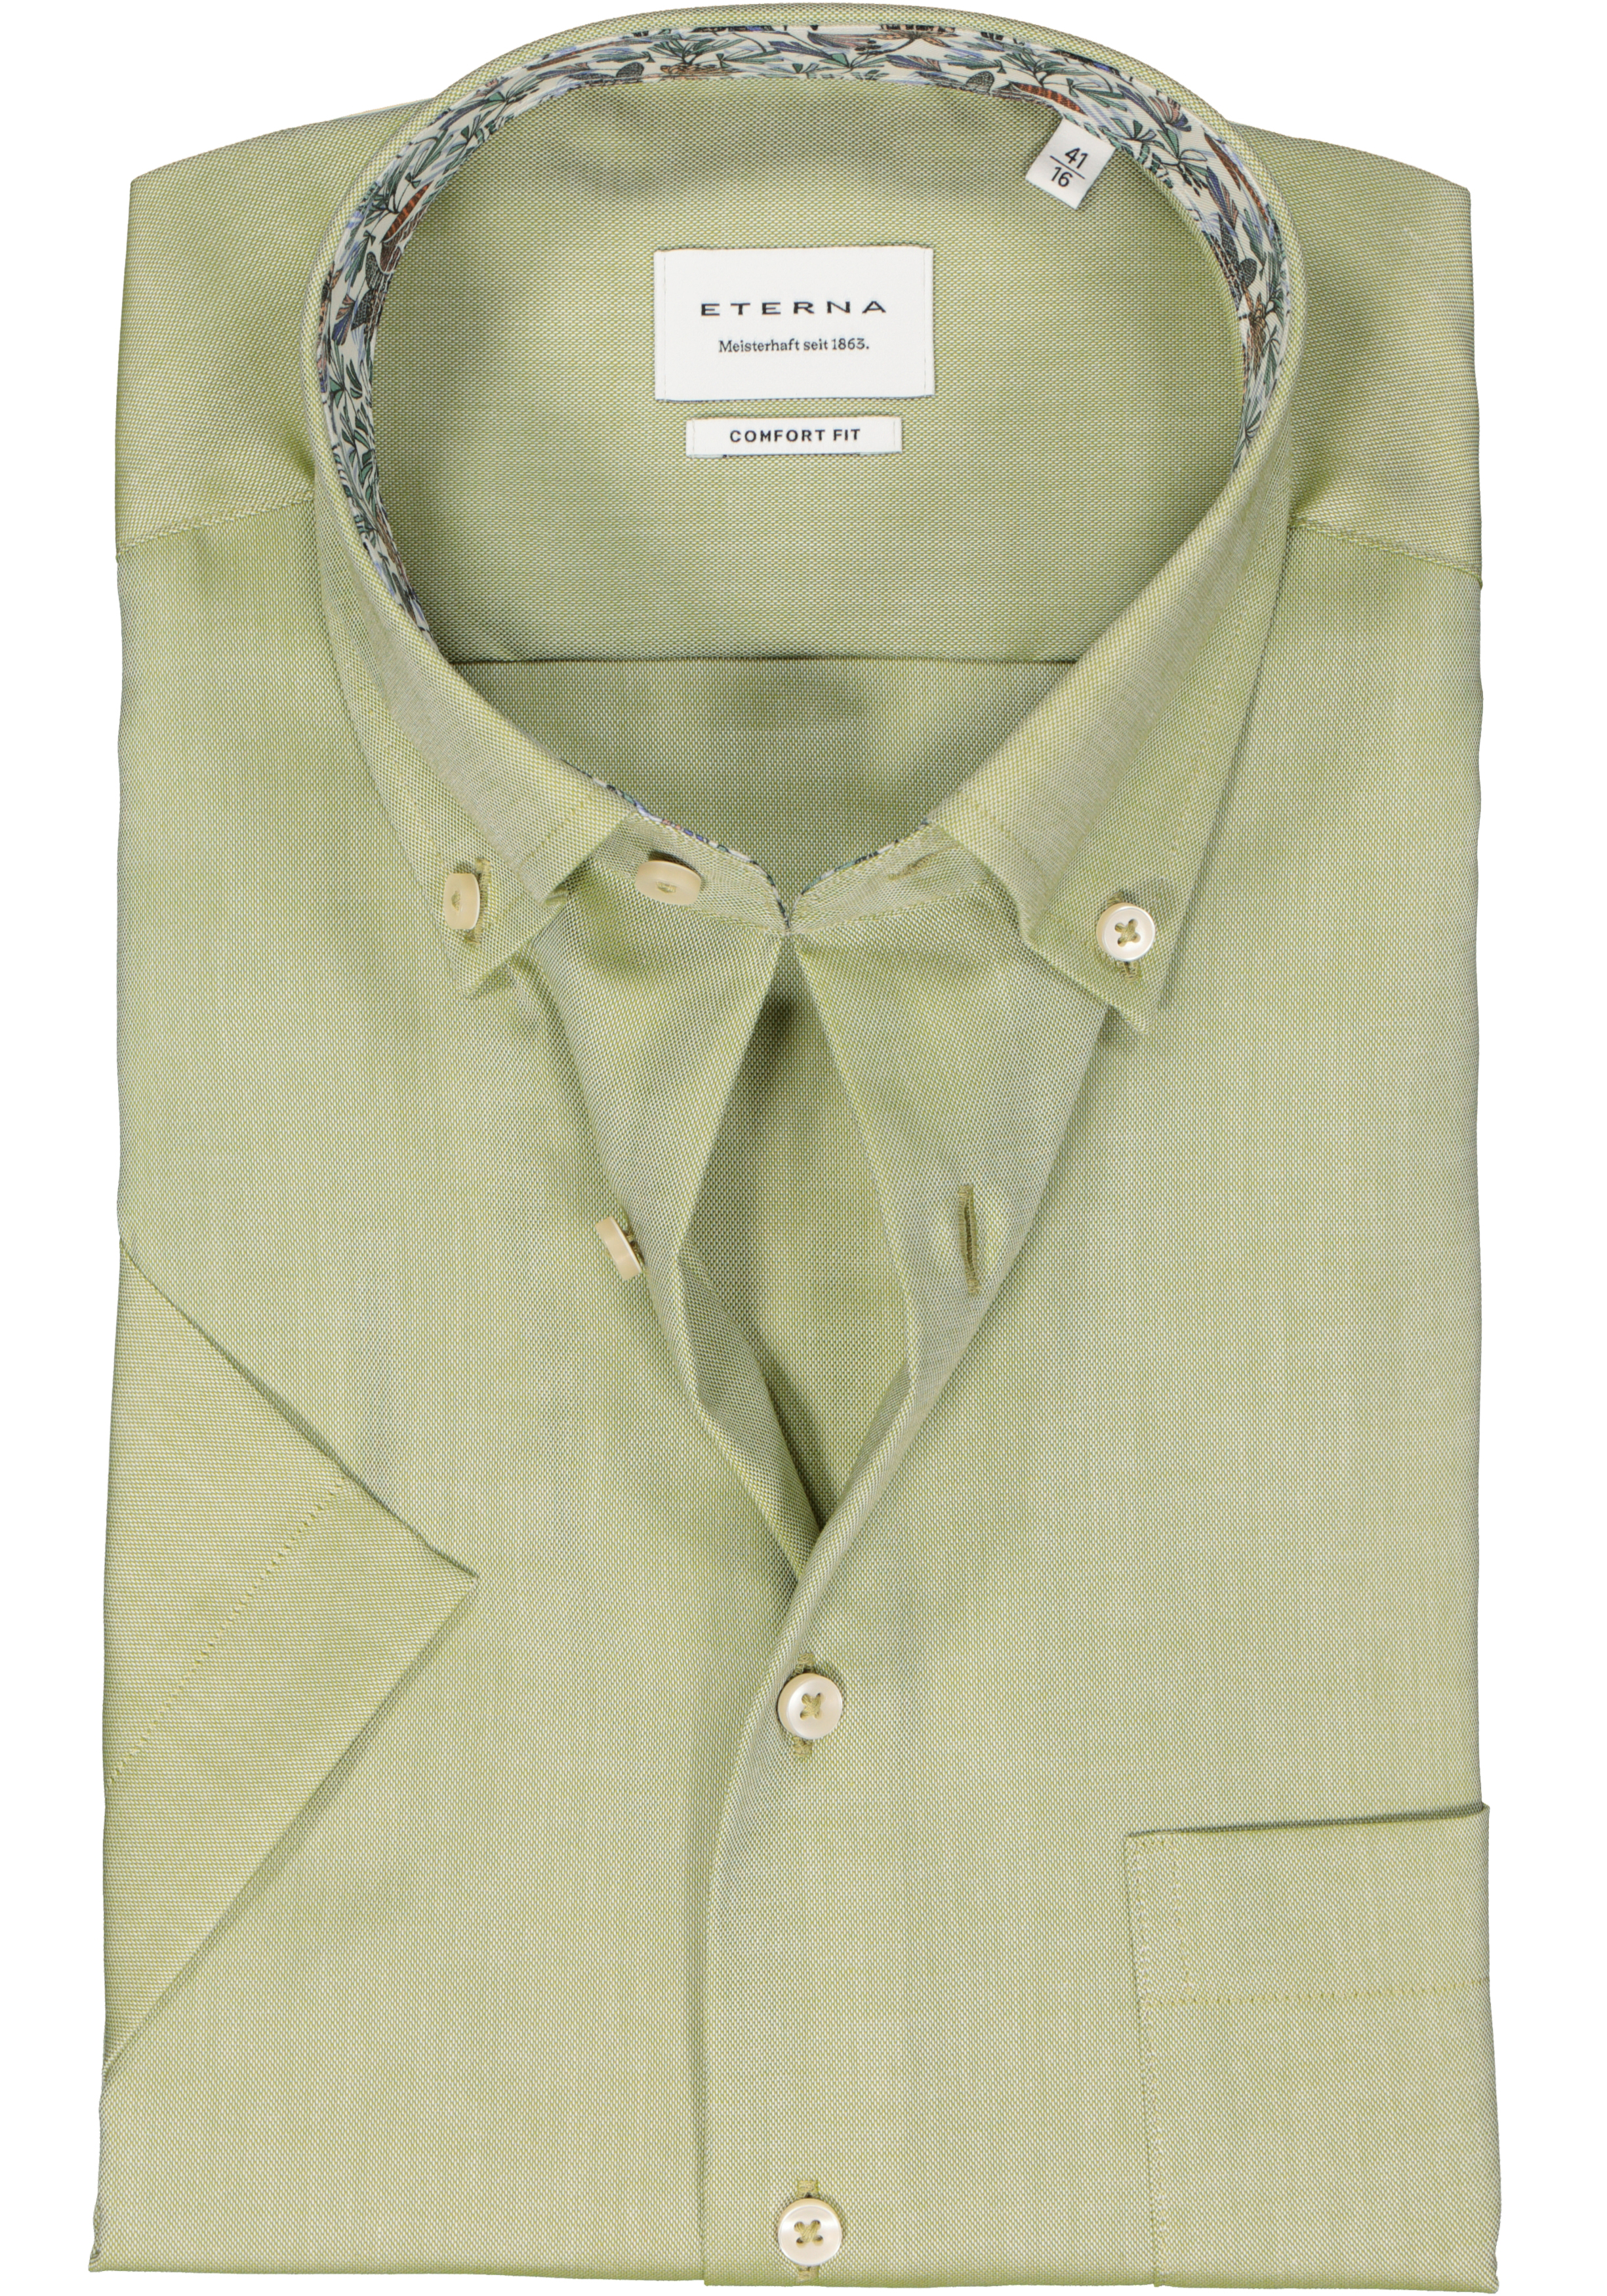 ETERNA comfort fit overhemd korte mouw, Oxford, groen (contrast)